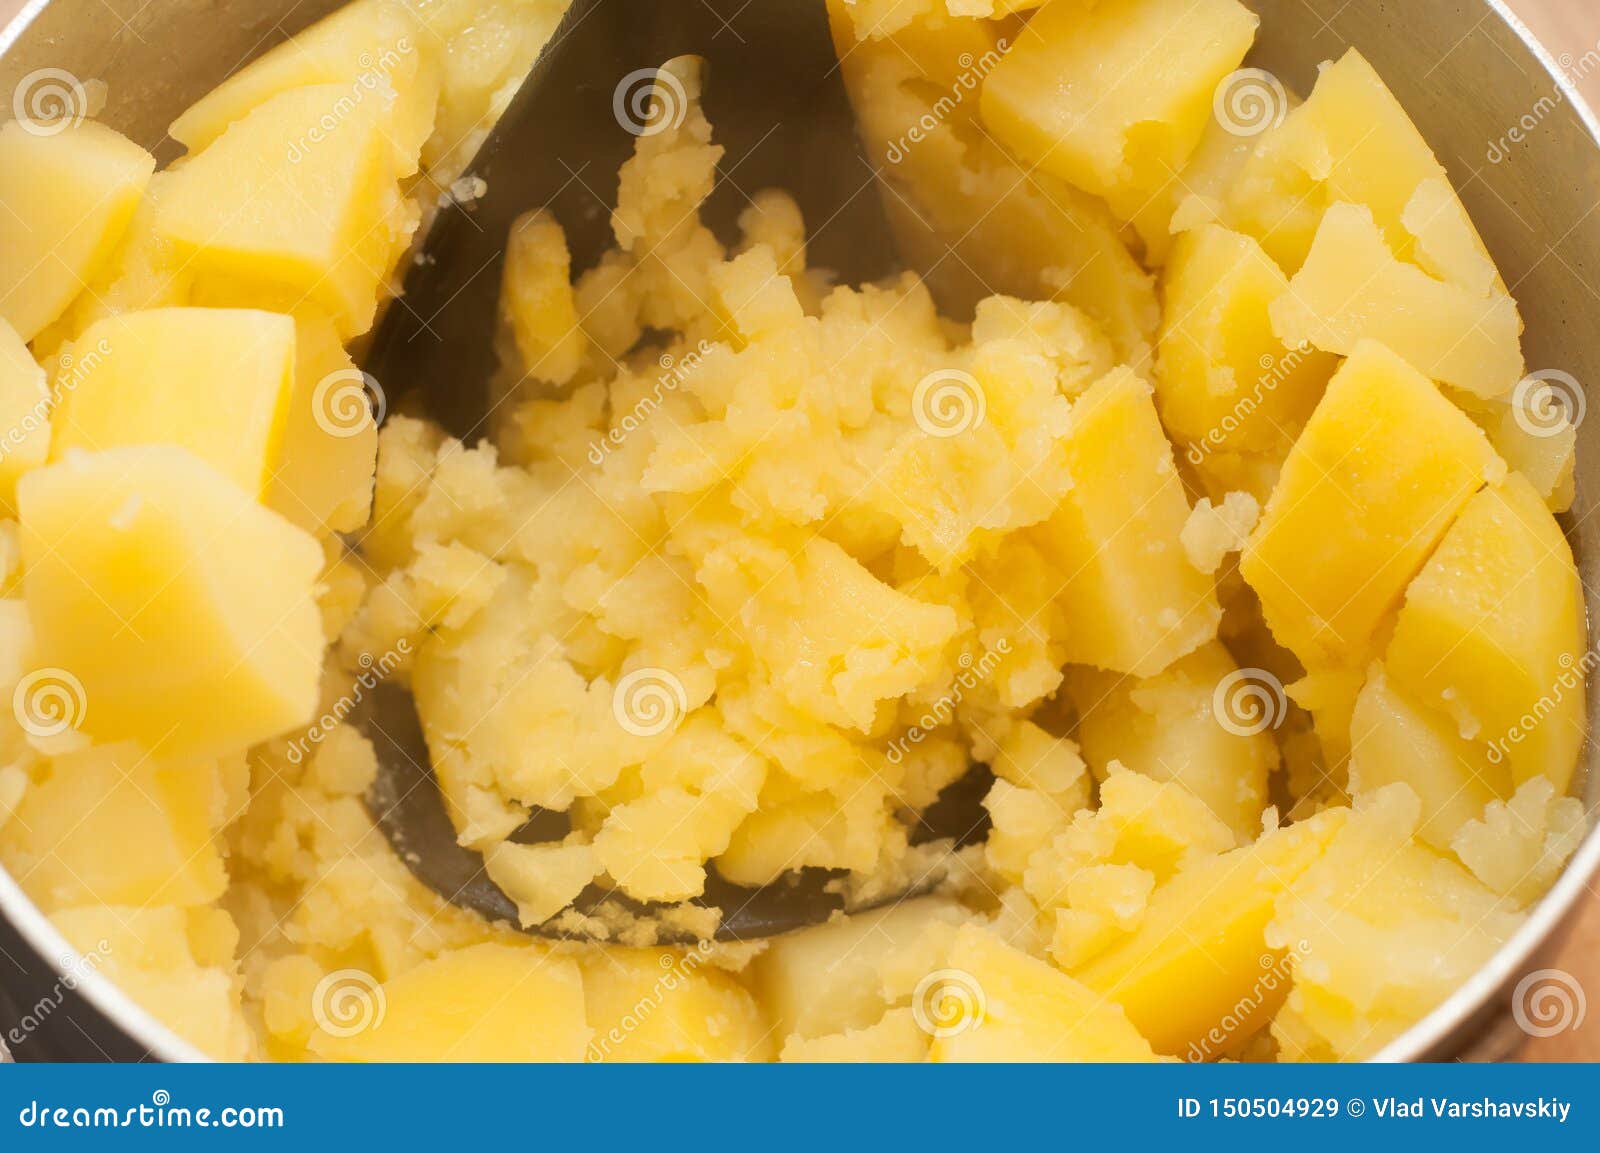 Дышать парами картошки. Картофель паровая обработка. Варёный картофель с укропом и маслом. Варёная картошка при насморке. Ингаляция картошкой.